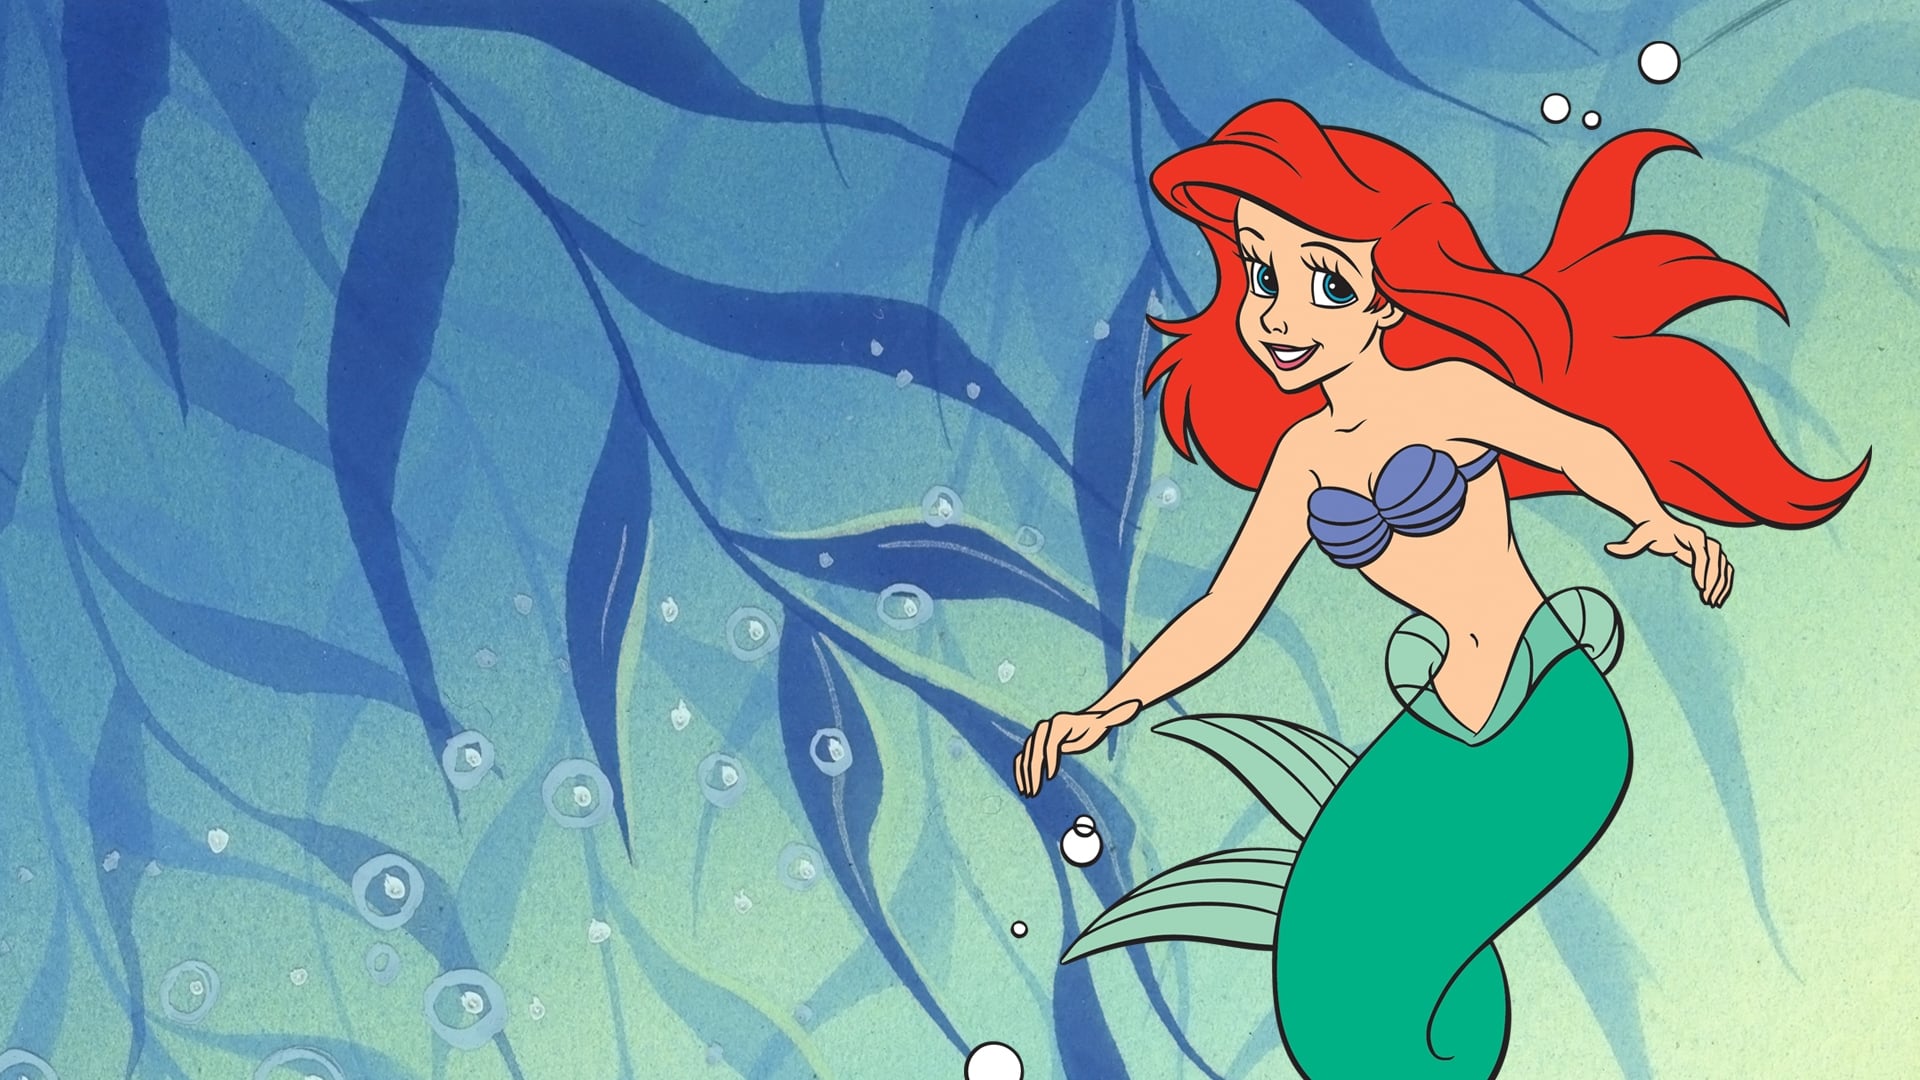 La sirenetta - Le nuove avventure marine di Ariel